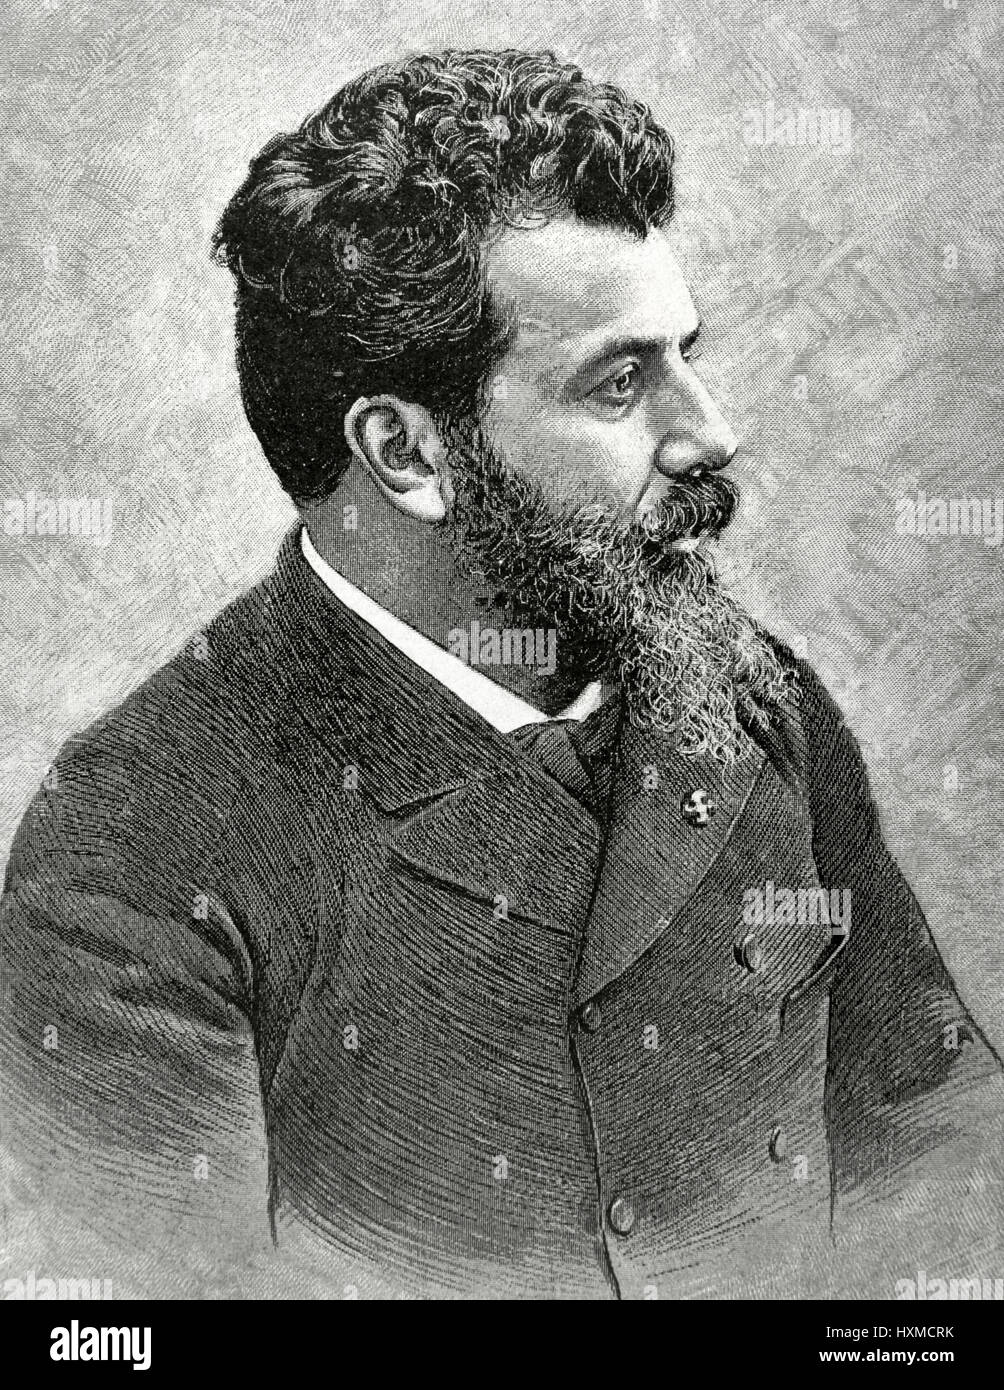 Francisco Domingo Marques (1842-1920). Spanischer Maler. Eclictic Stil. Porträt. Gravur. "La Ilustracion Iberica", 1888. Stockfoto